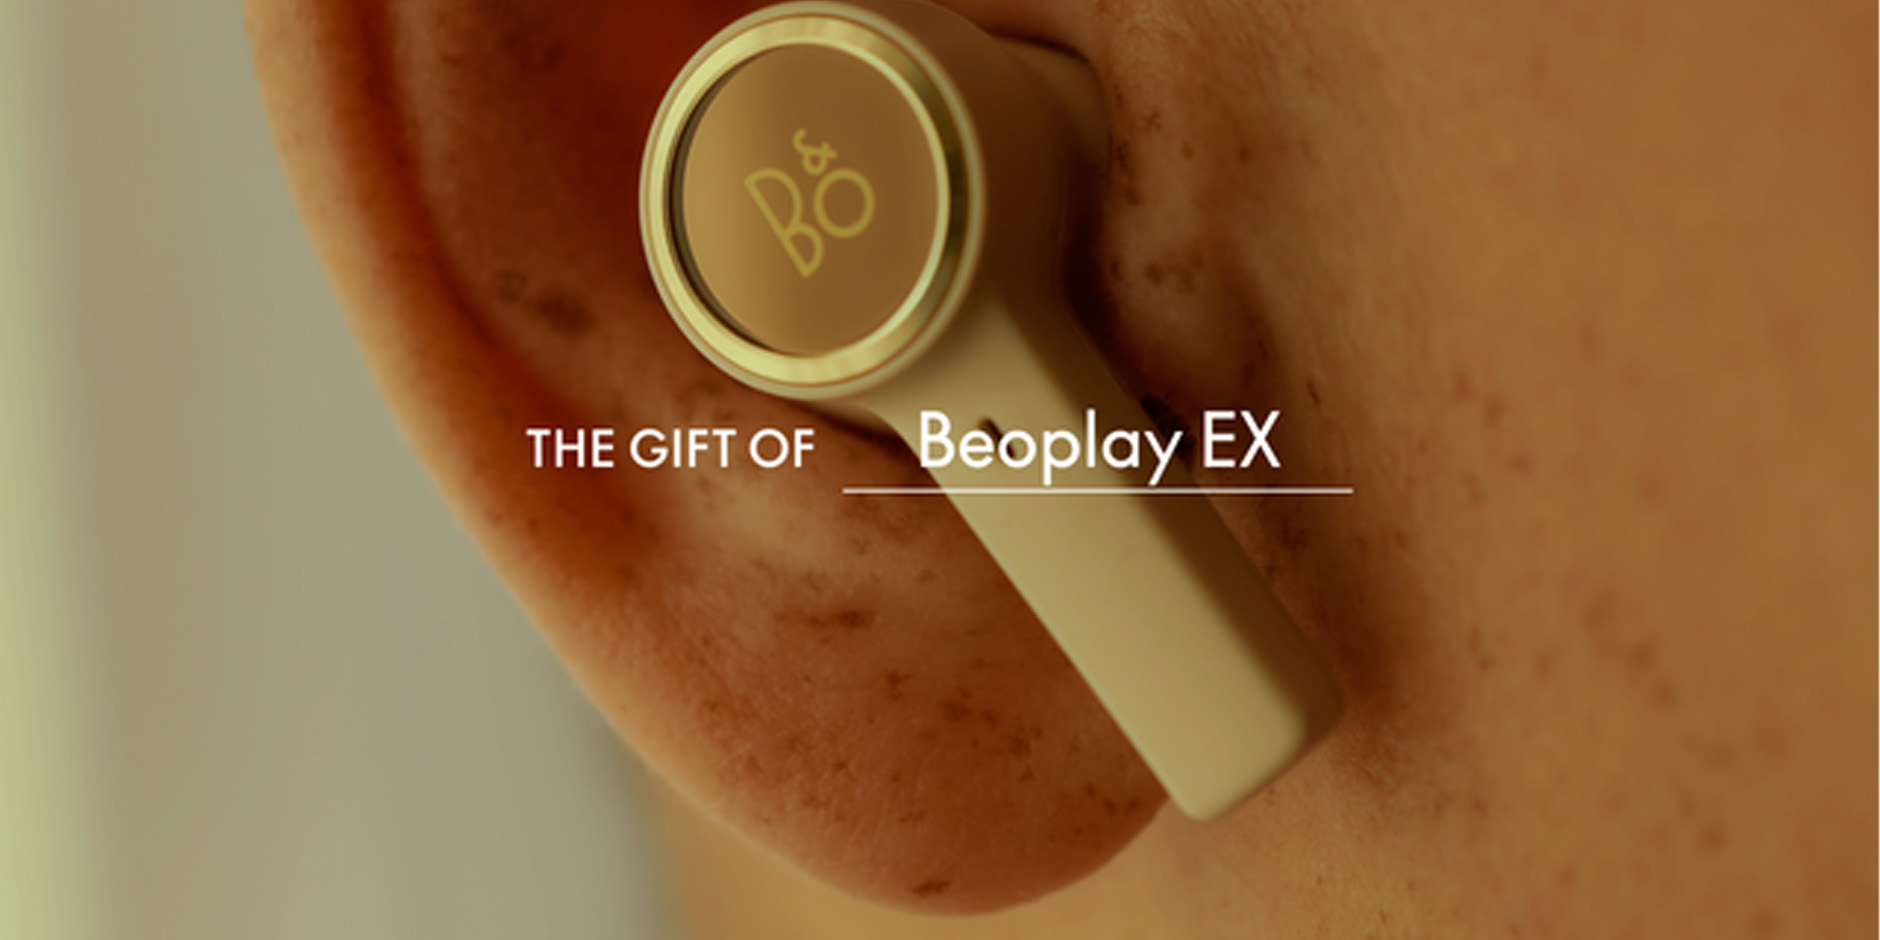 Beoplay EX earphones